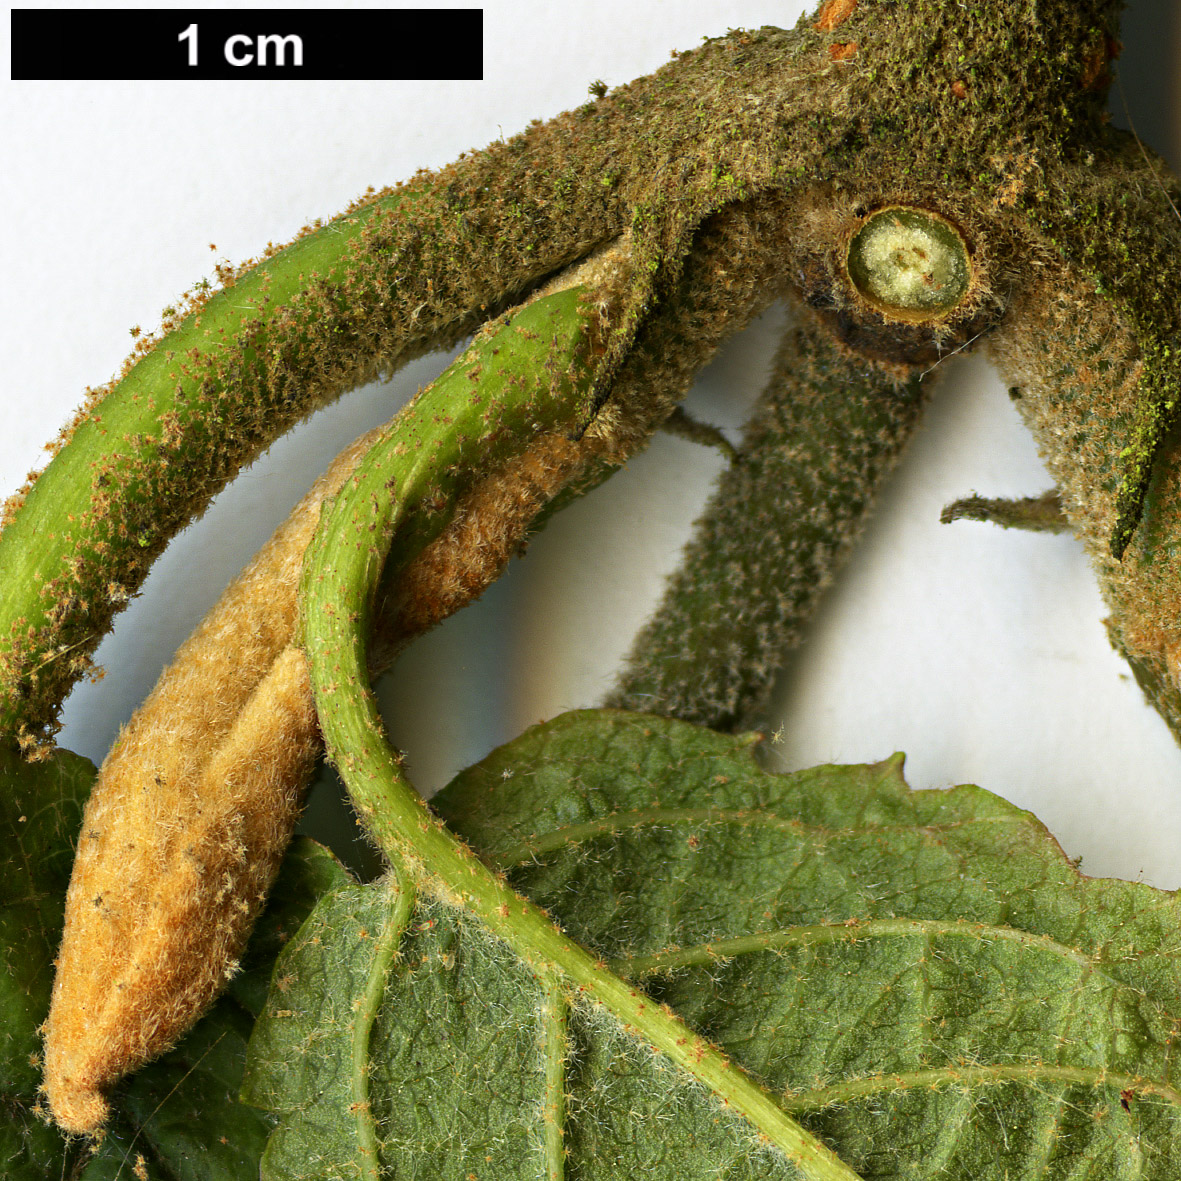 High resolution image: Family: Adoxaceae - Genus: Viburnum - Taxon: lantanoides